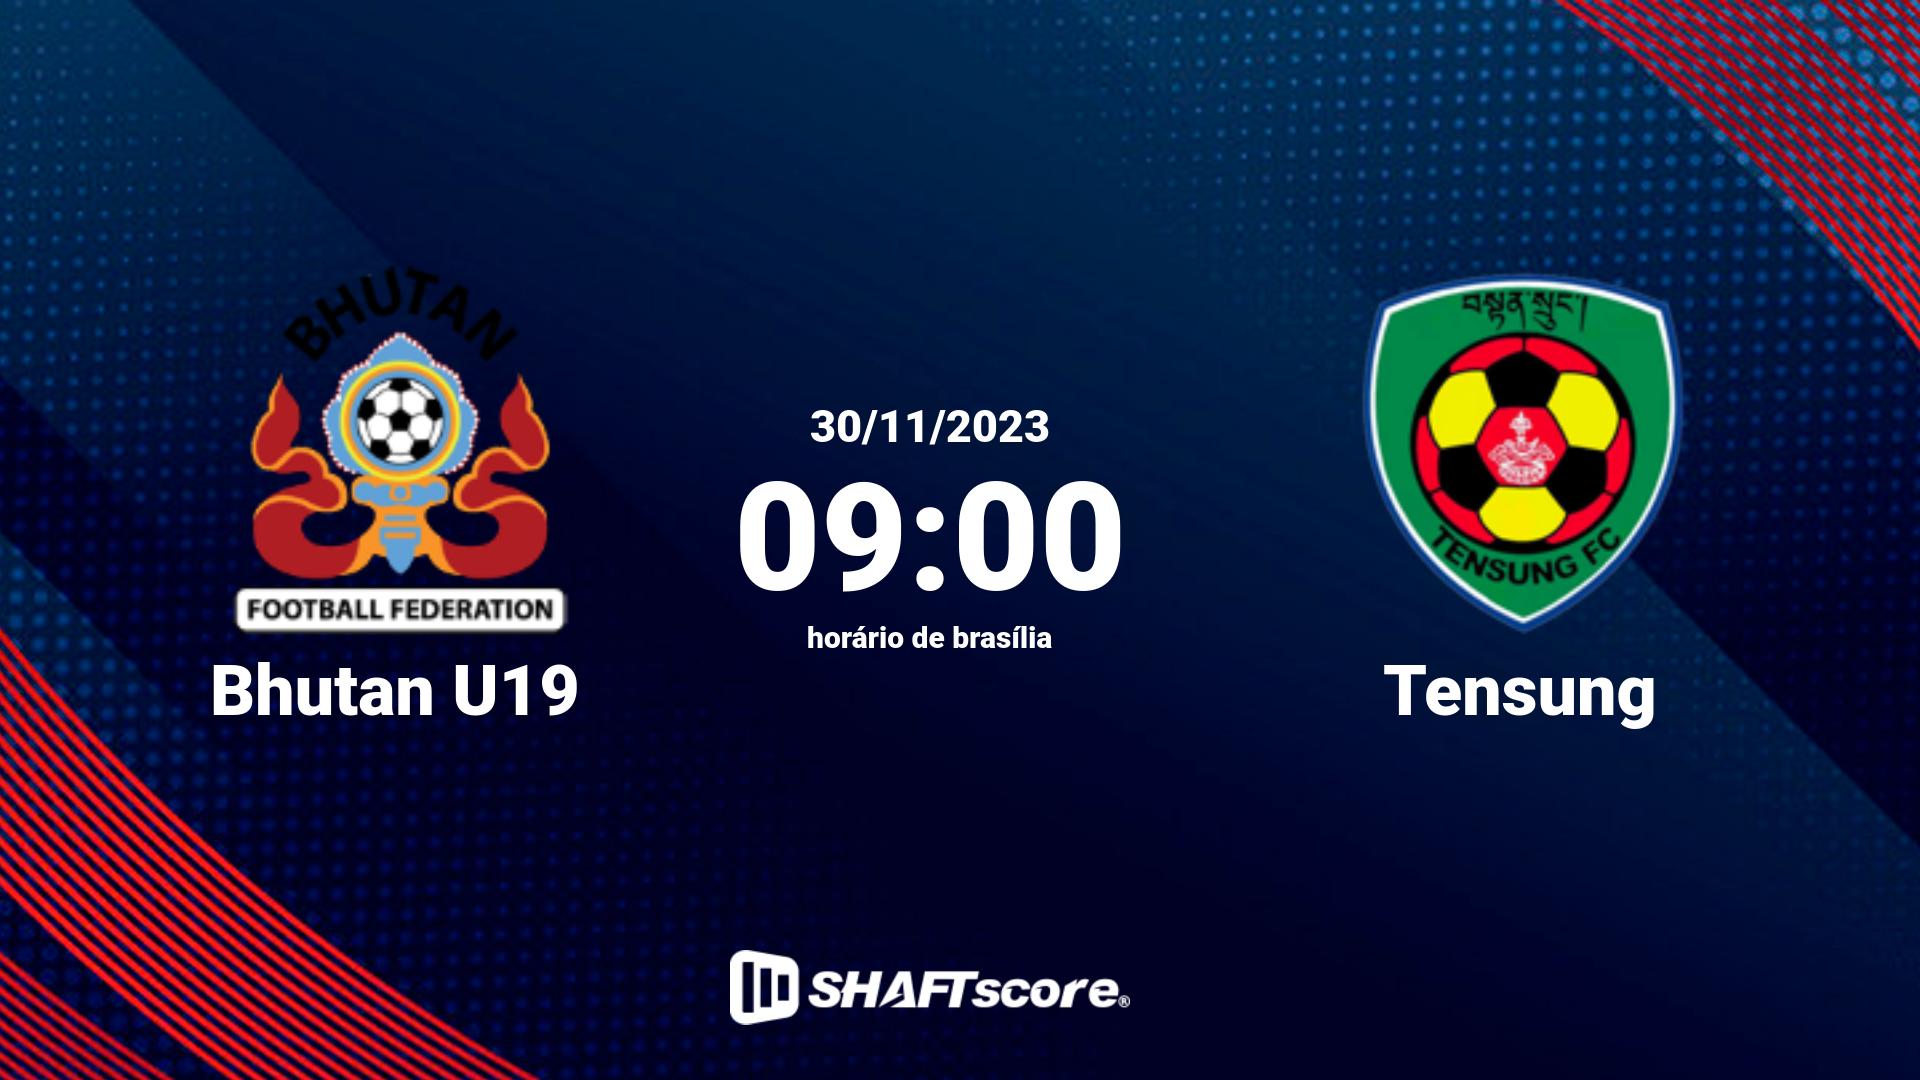 Estatísticas do jogo Bhutan U19 vs Tensung 30.11 09:00